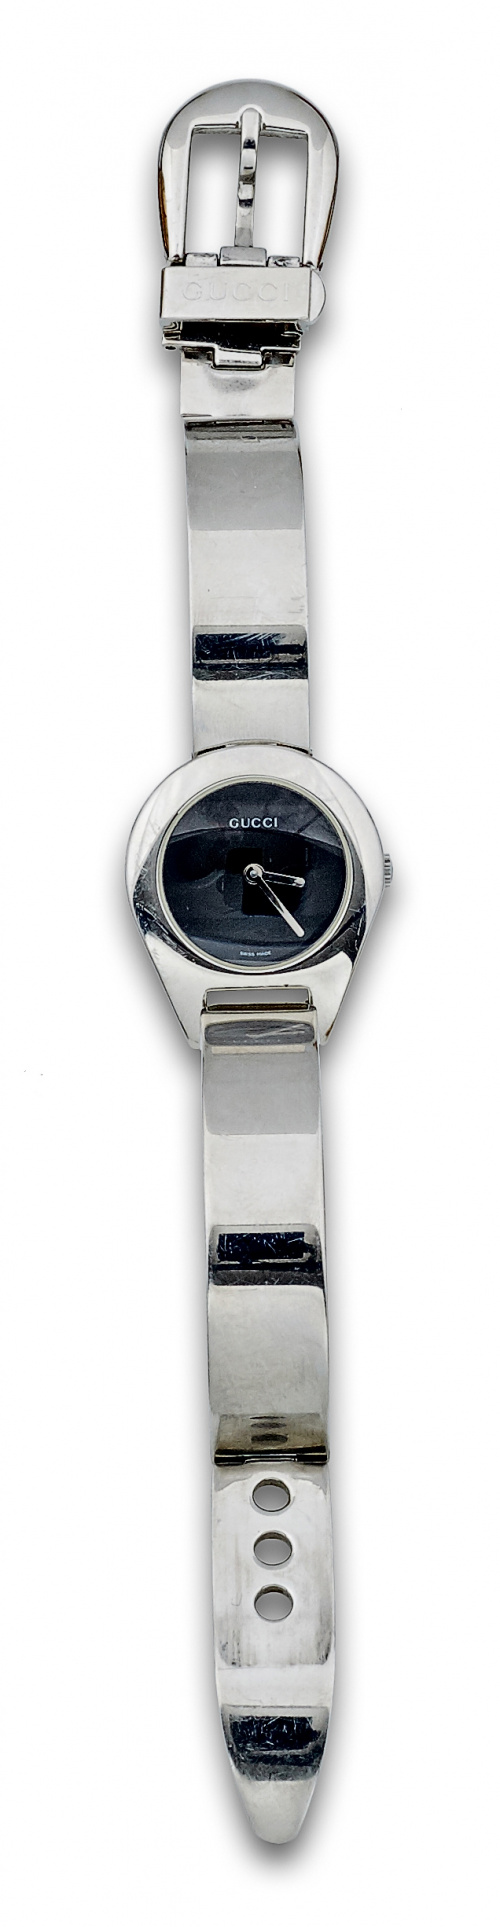 Reloj GUCCI modelo 6700 en acero con pulsera de placas arti